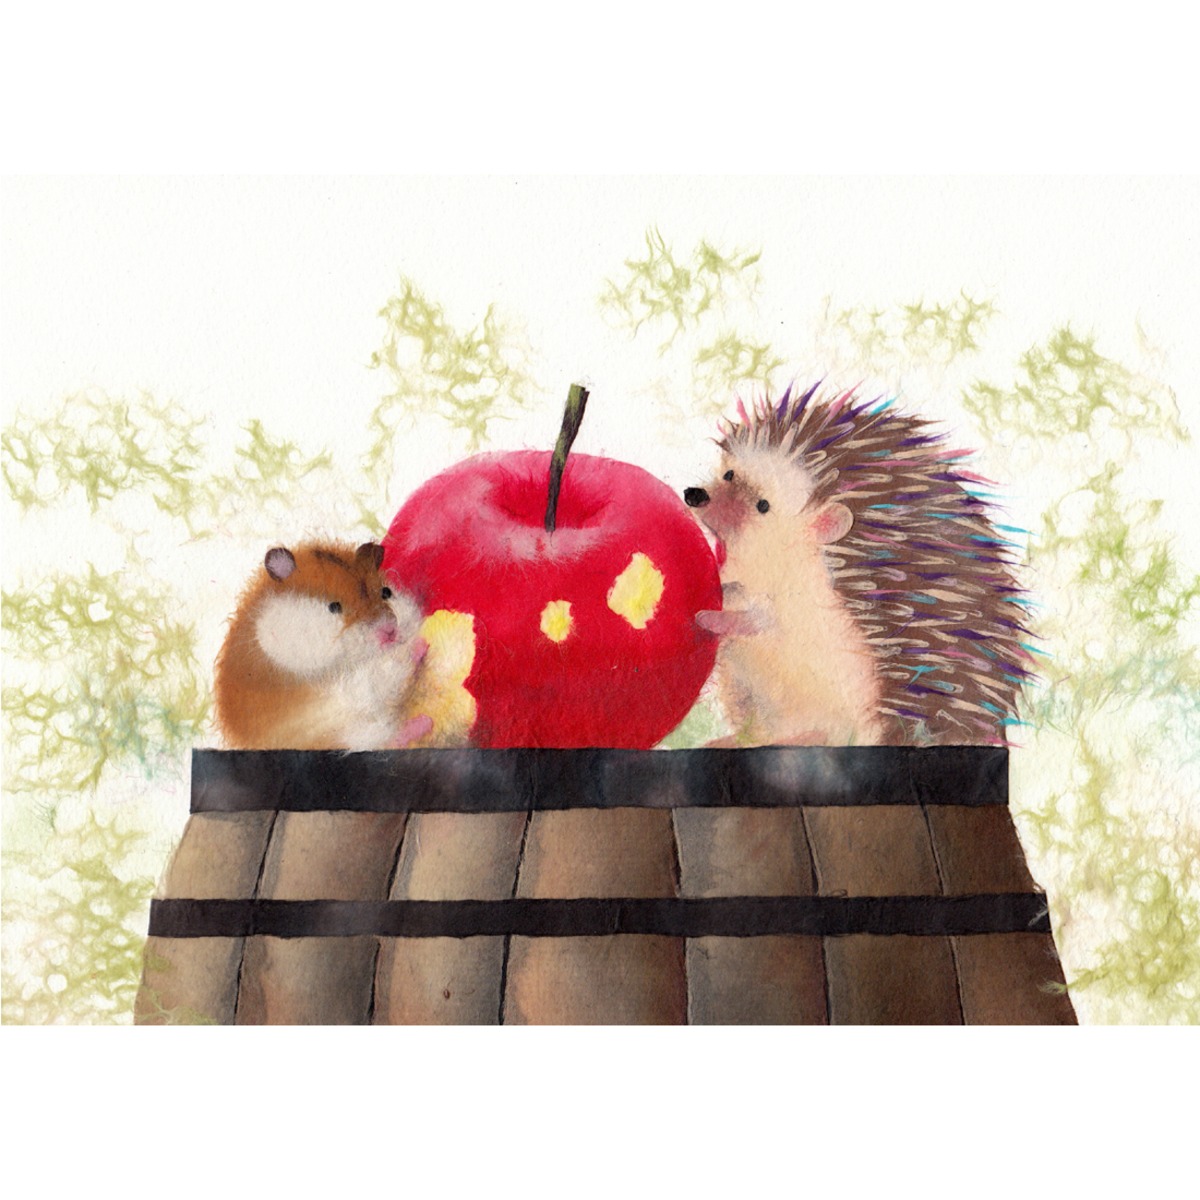 おやつの時間 ハリネズミさんとハムスターさんのおやつは真っ赤なリンゴ かわいい動物達に癒されるイラスト ポストカード